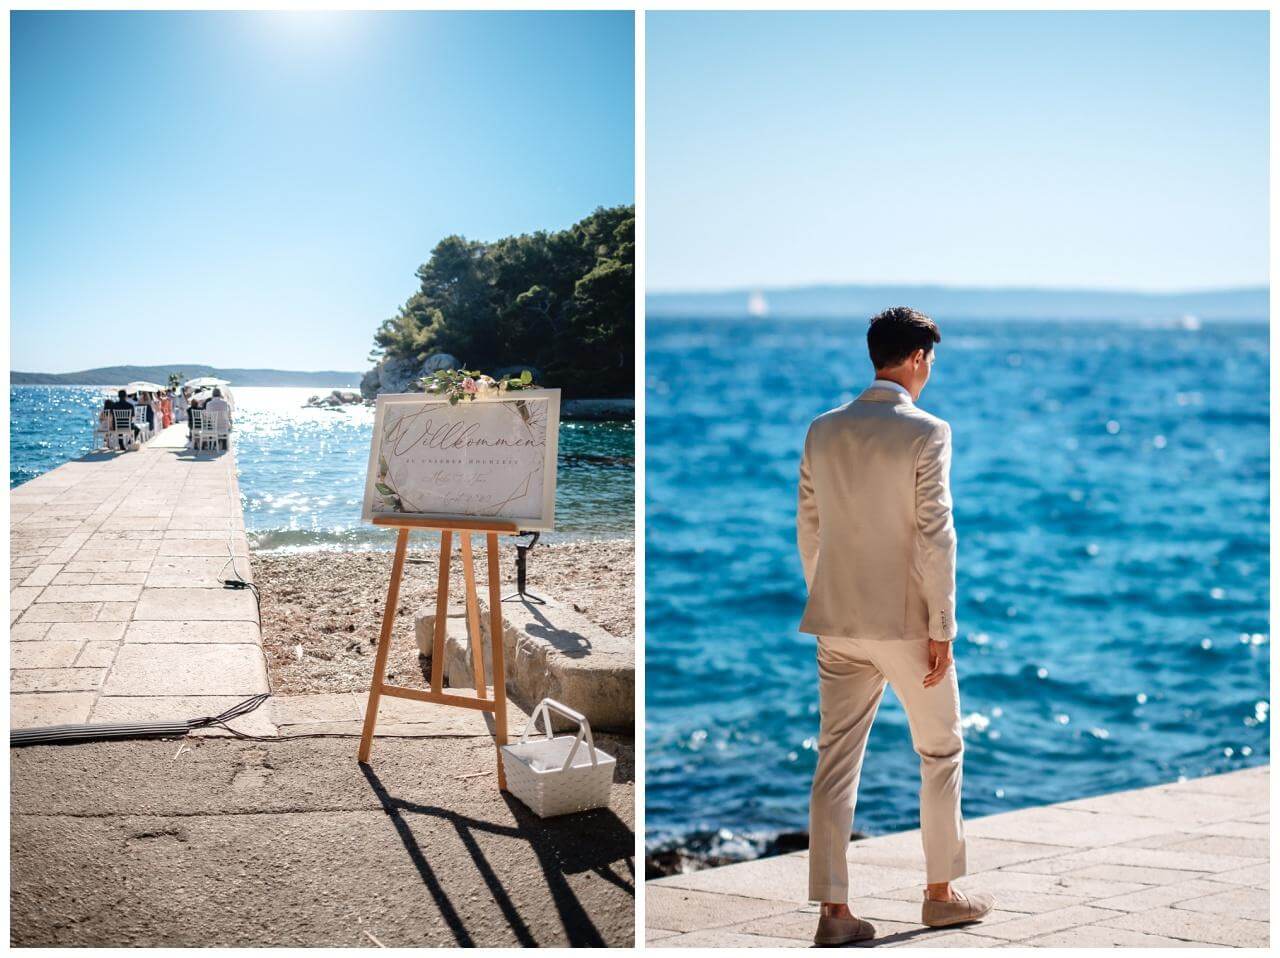 Hochzeit in einer alten Villa in Kroatien am Meer